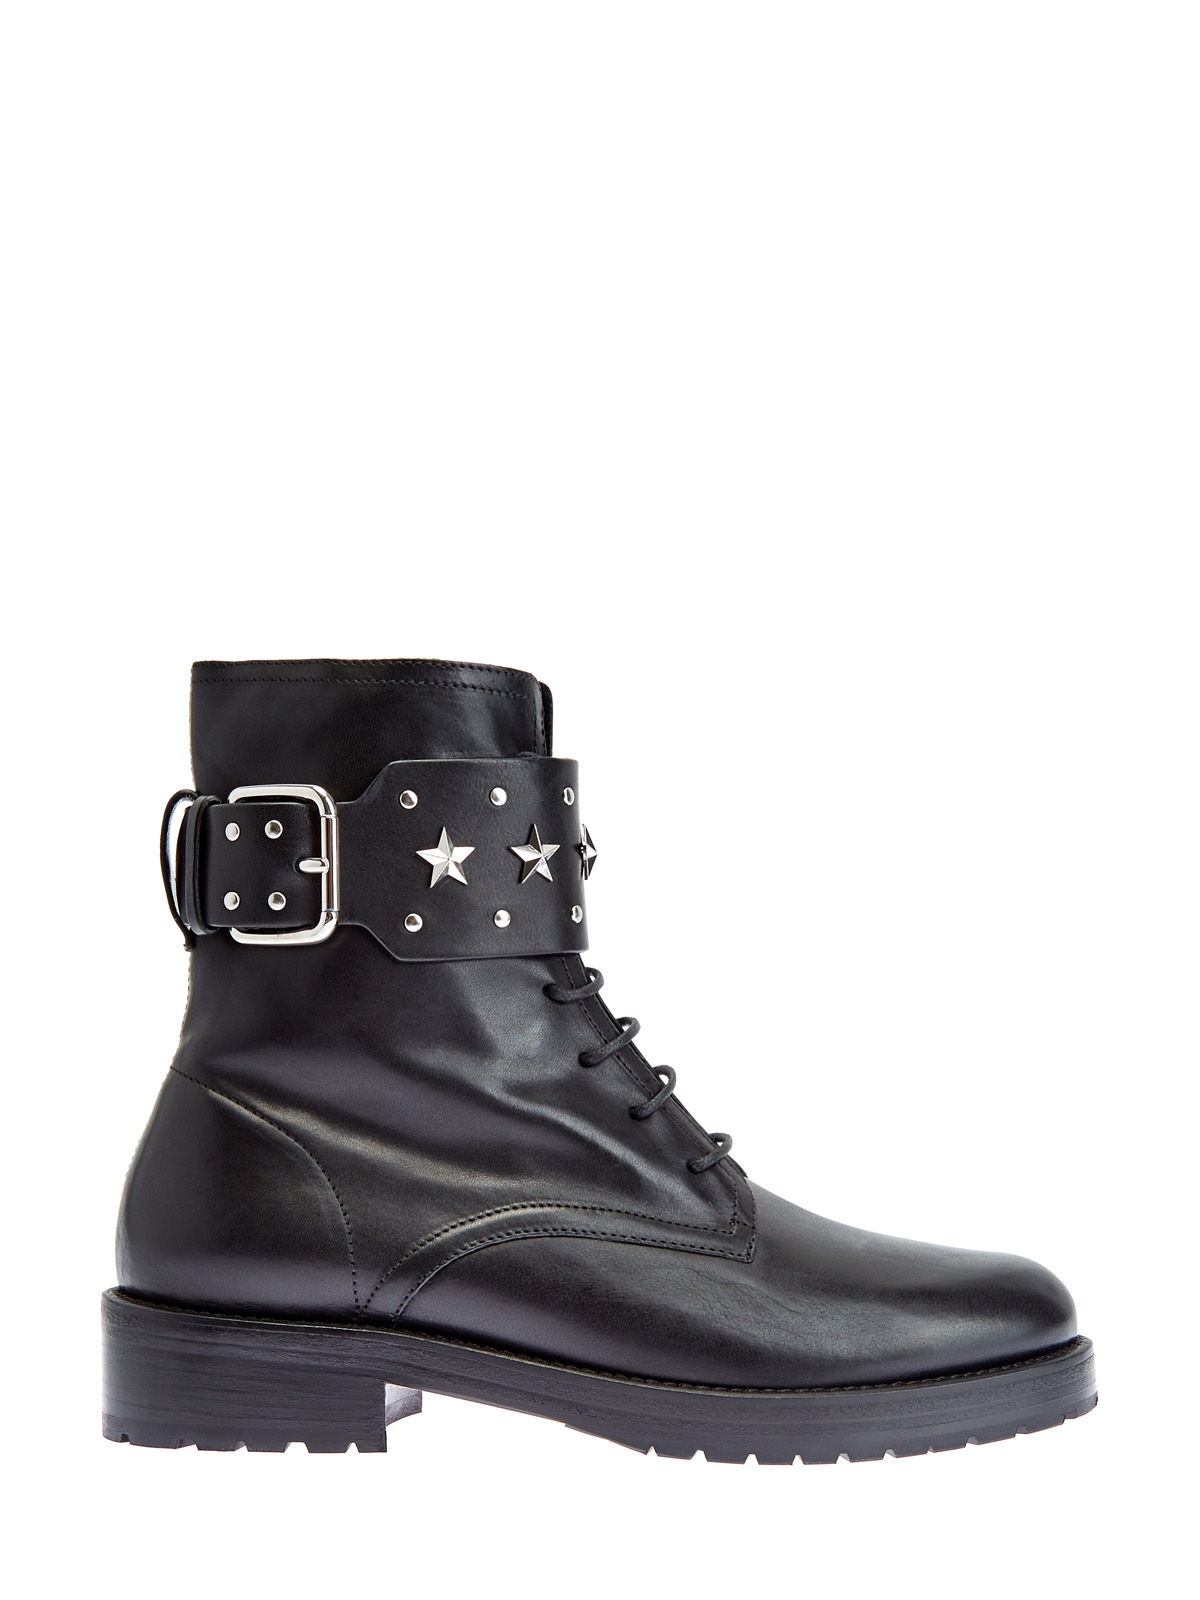 Ботинки Sky Combat из телячьей кожи с пряжками и заклепками REDVALENTINO, цвет черный, размер 37;37.5;38;38.5;39;40 - фото 1